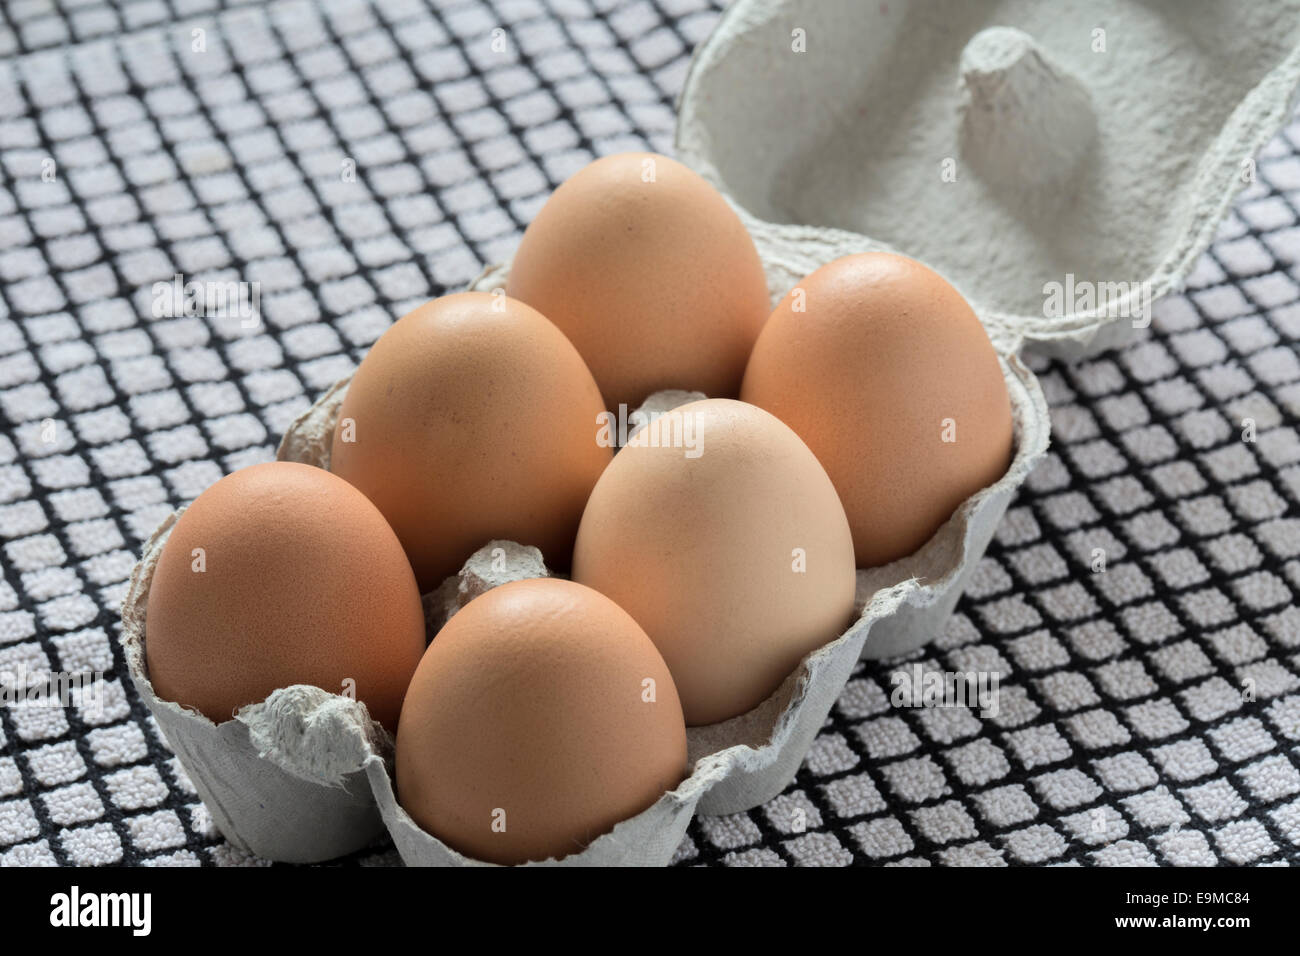 Recién lavados free range huevos de gallina en una caja de papel reciclado. Foto de stock